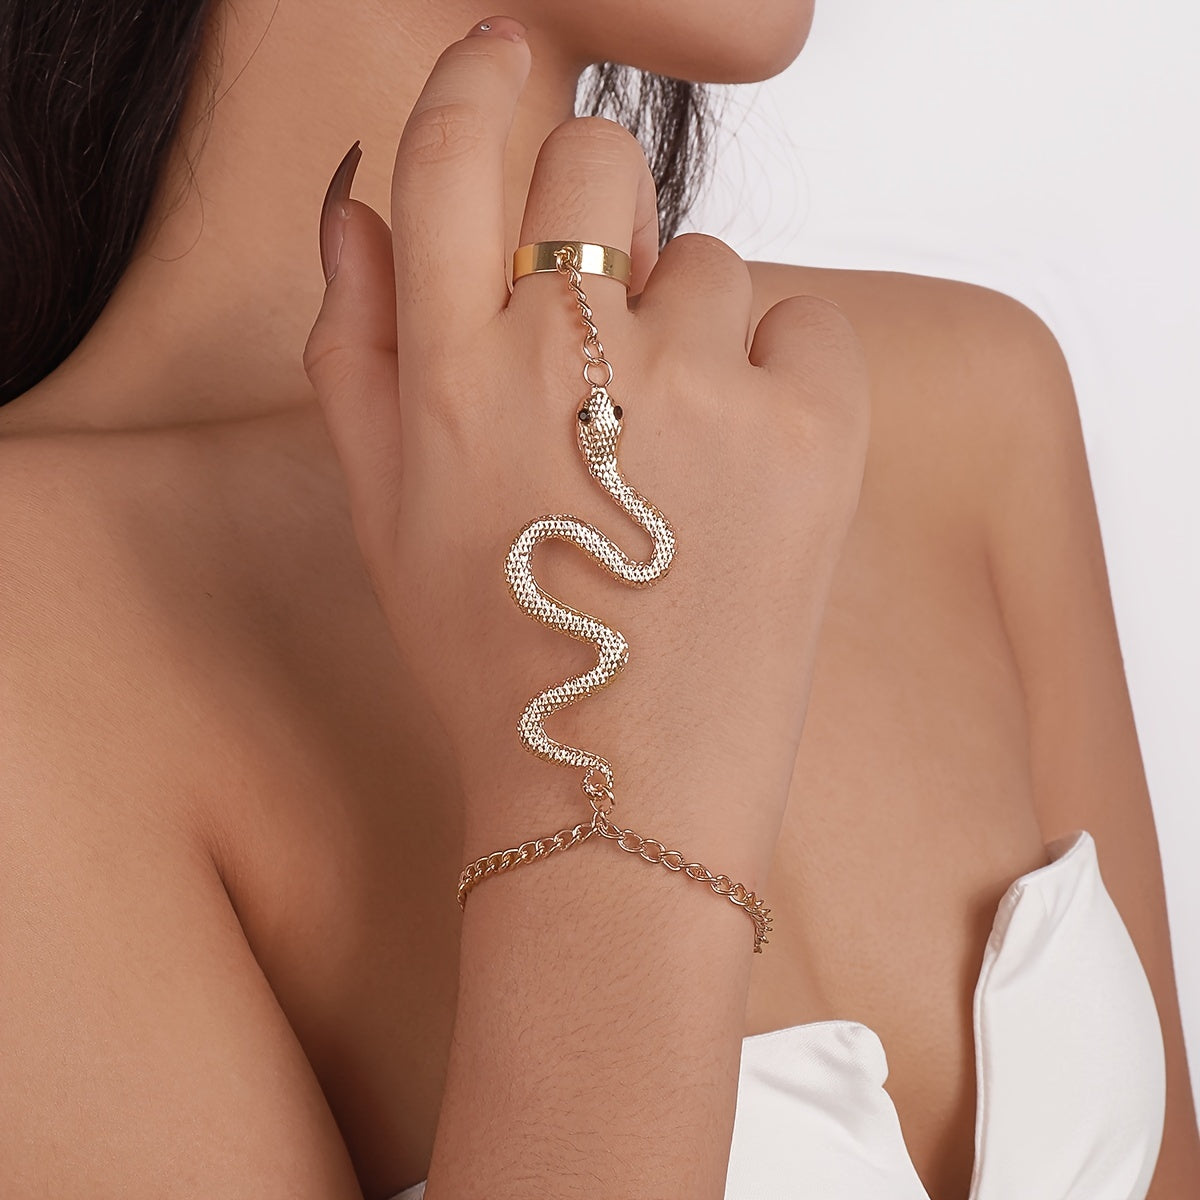 Hand Chain Bracelet Boho Snake Finger Ring Bracelet Slave Chain Hand Harness Bracelet Dainty Bracelet with Open Band Ring for Women Girls Silver Gold